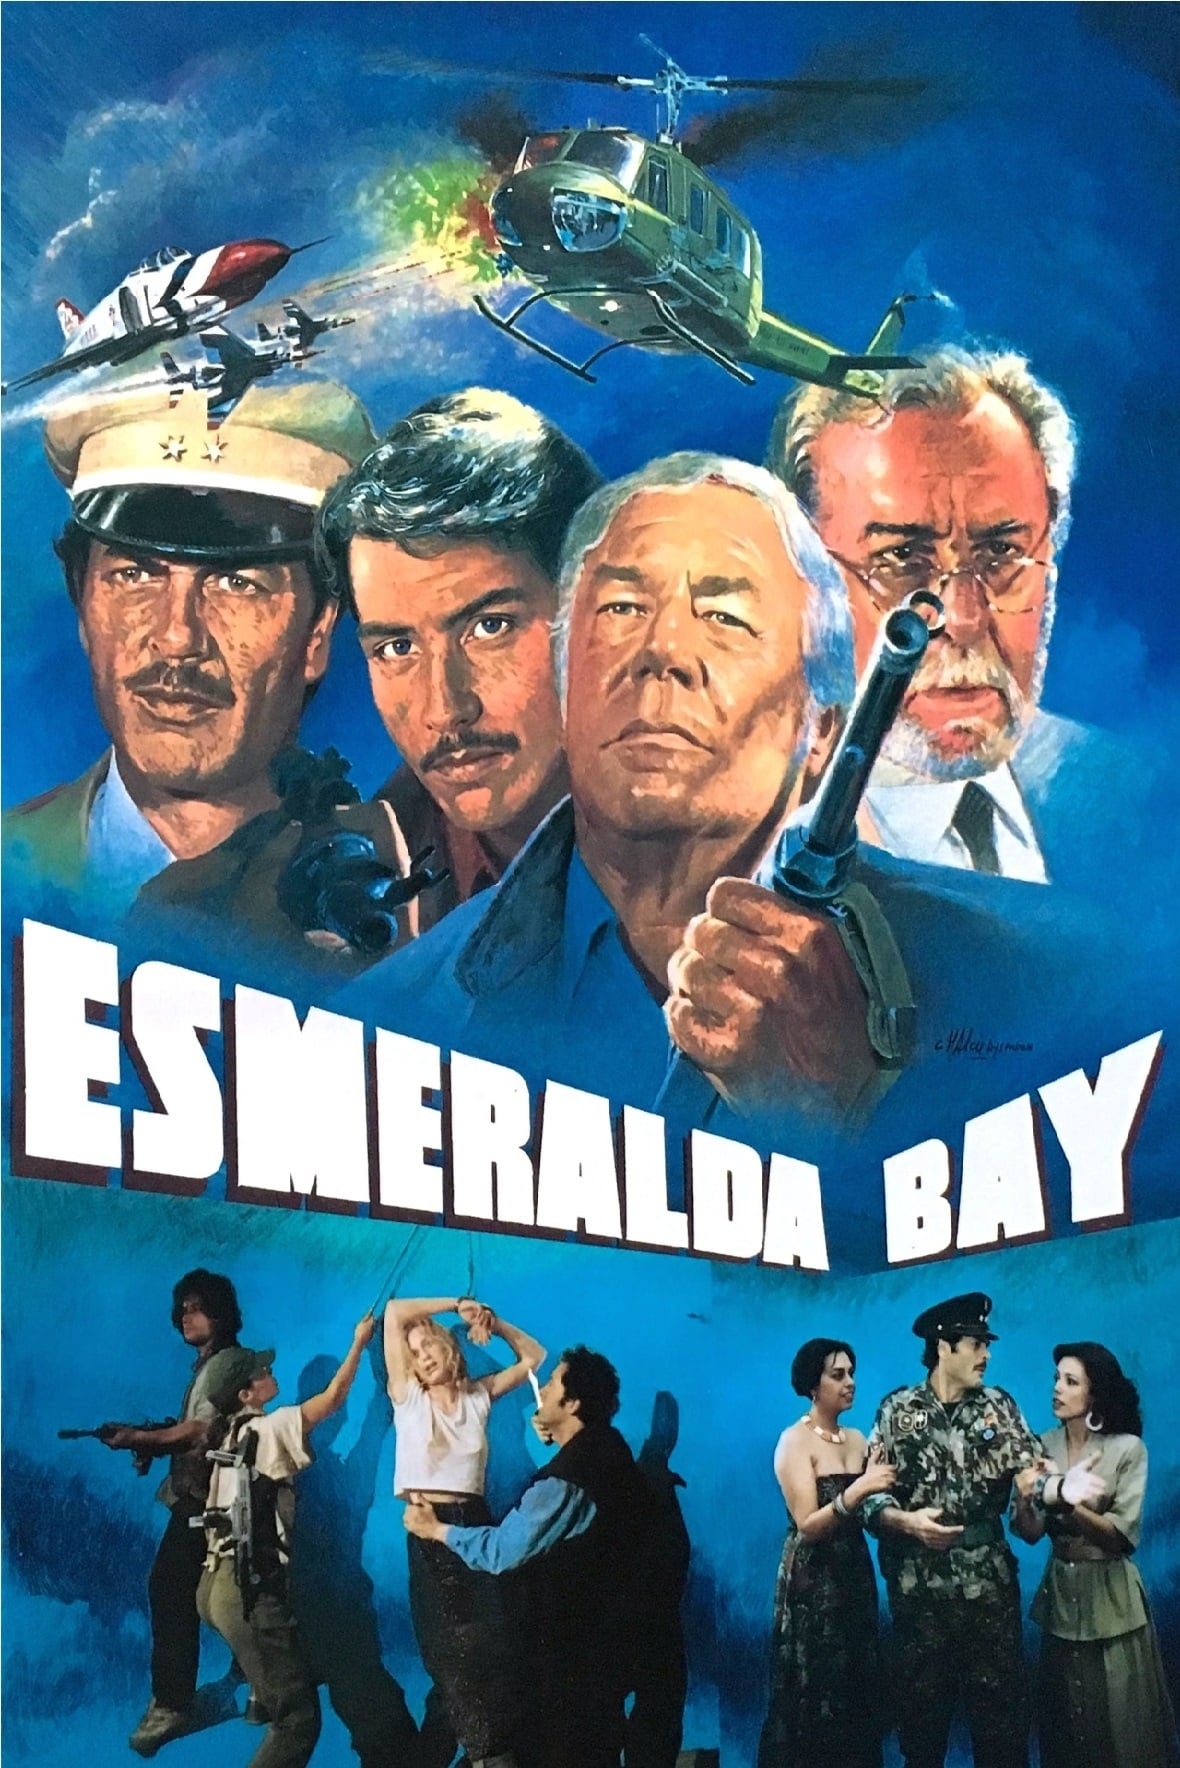 Esmeralda Bay (1989)